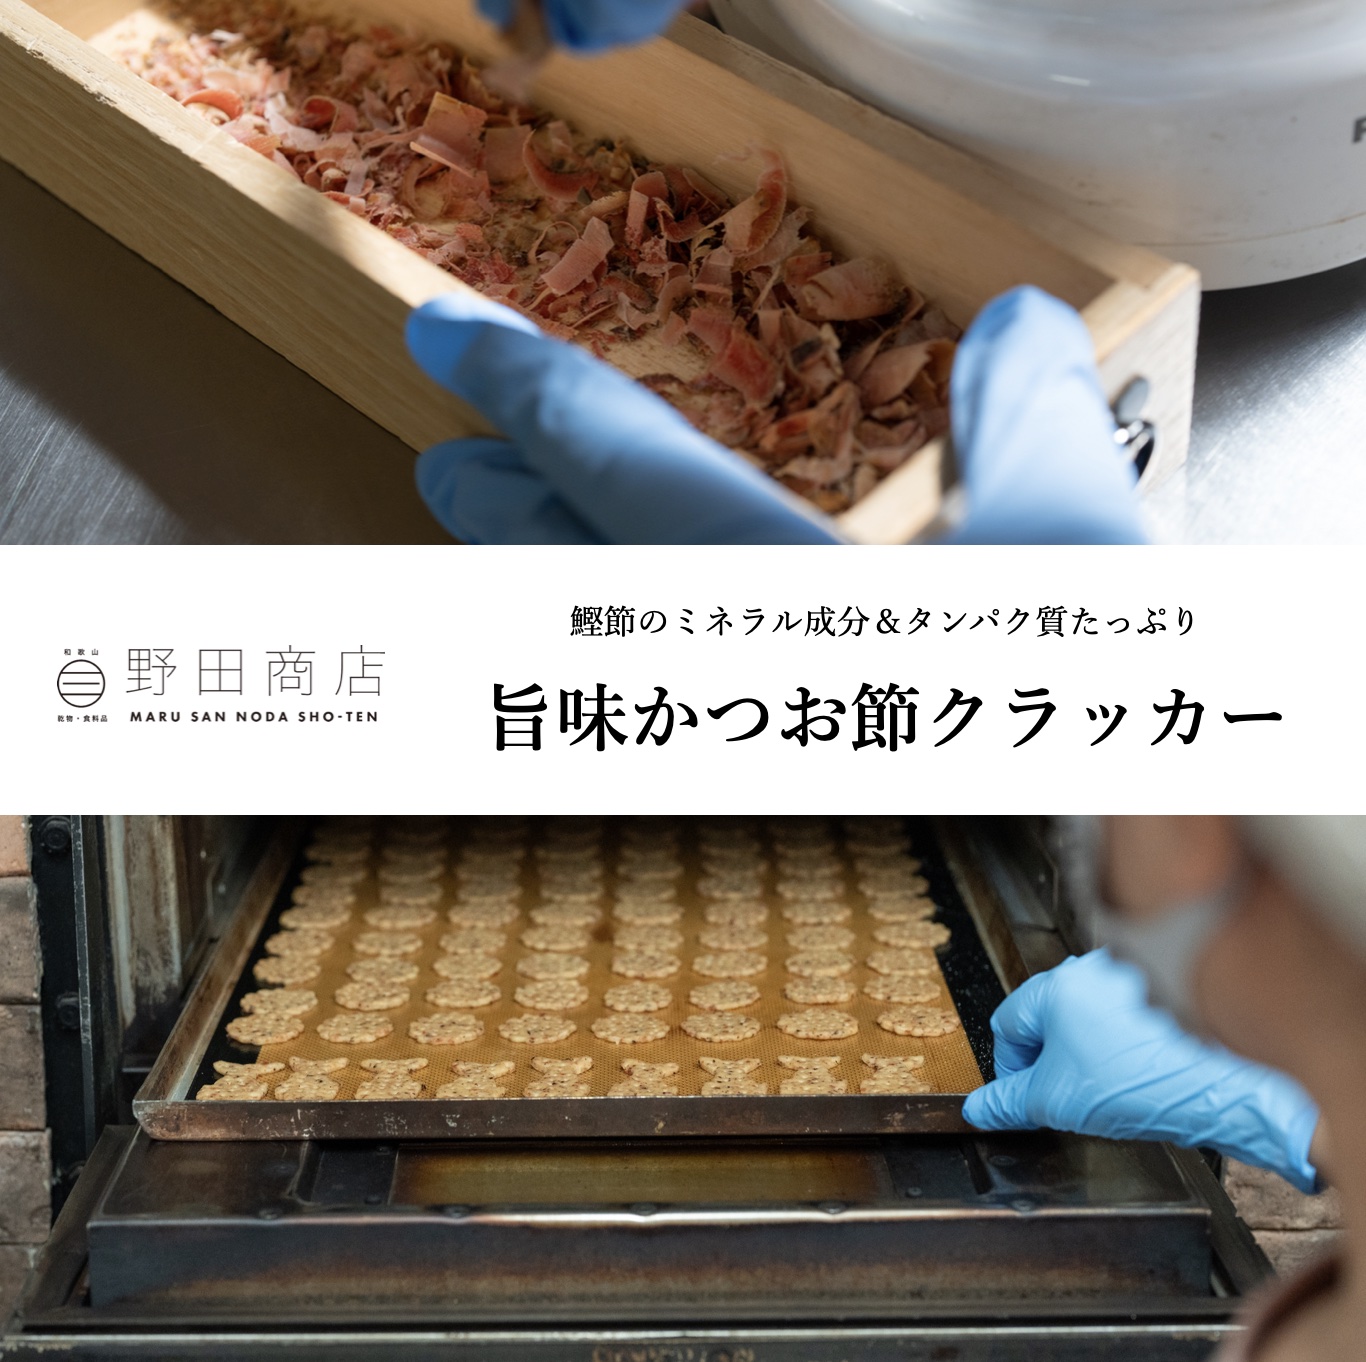 オアディスワンのお菓子定期便に含まれるミネラルやタンパク質がおいしくとれる野田商店の鰹節クラッカーのイメージ